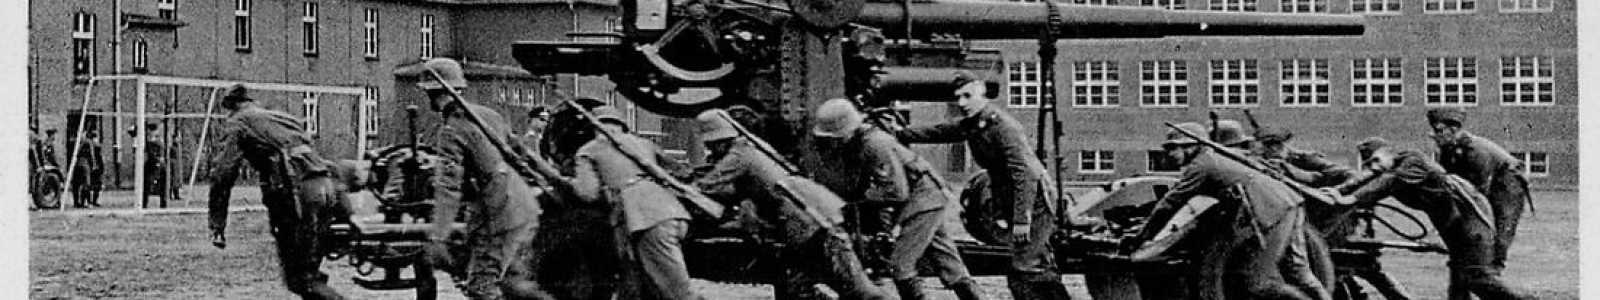 O82r - Jour 2: Histoire contemporaine allemande - ordres et militaria de 1919